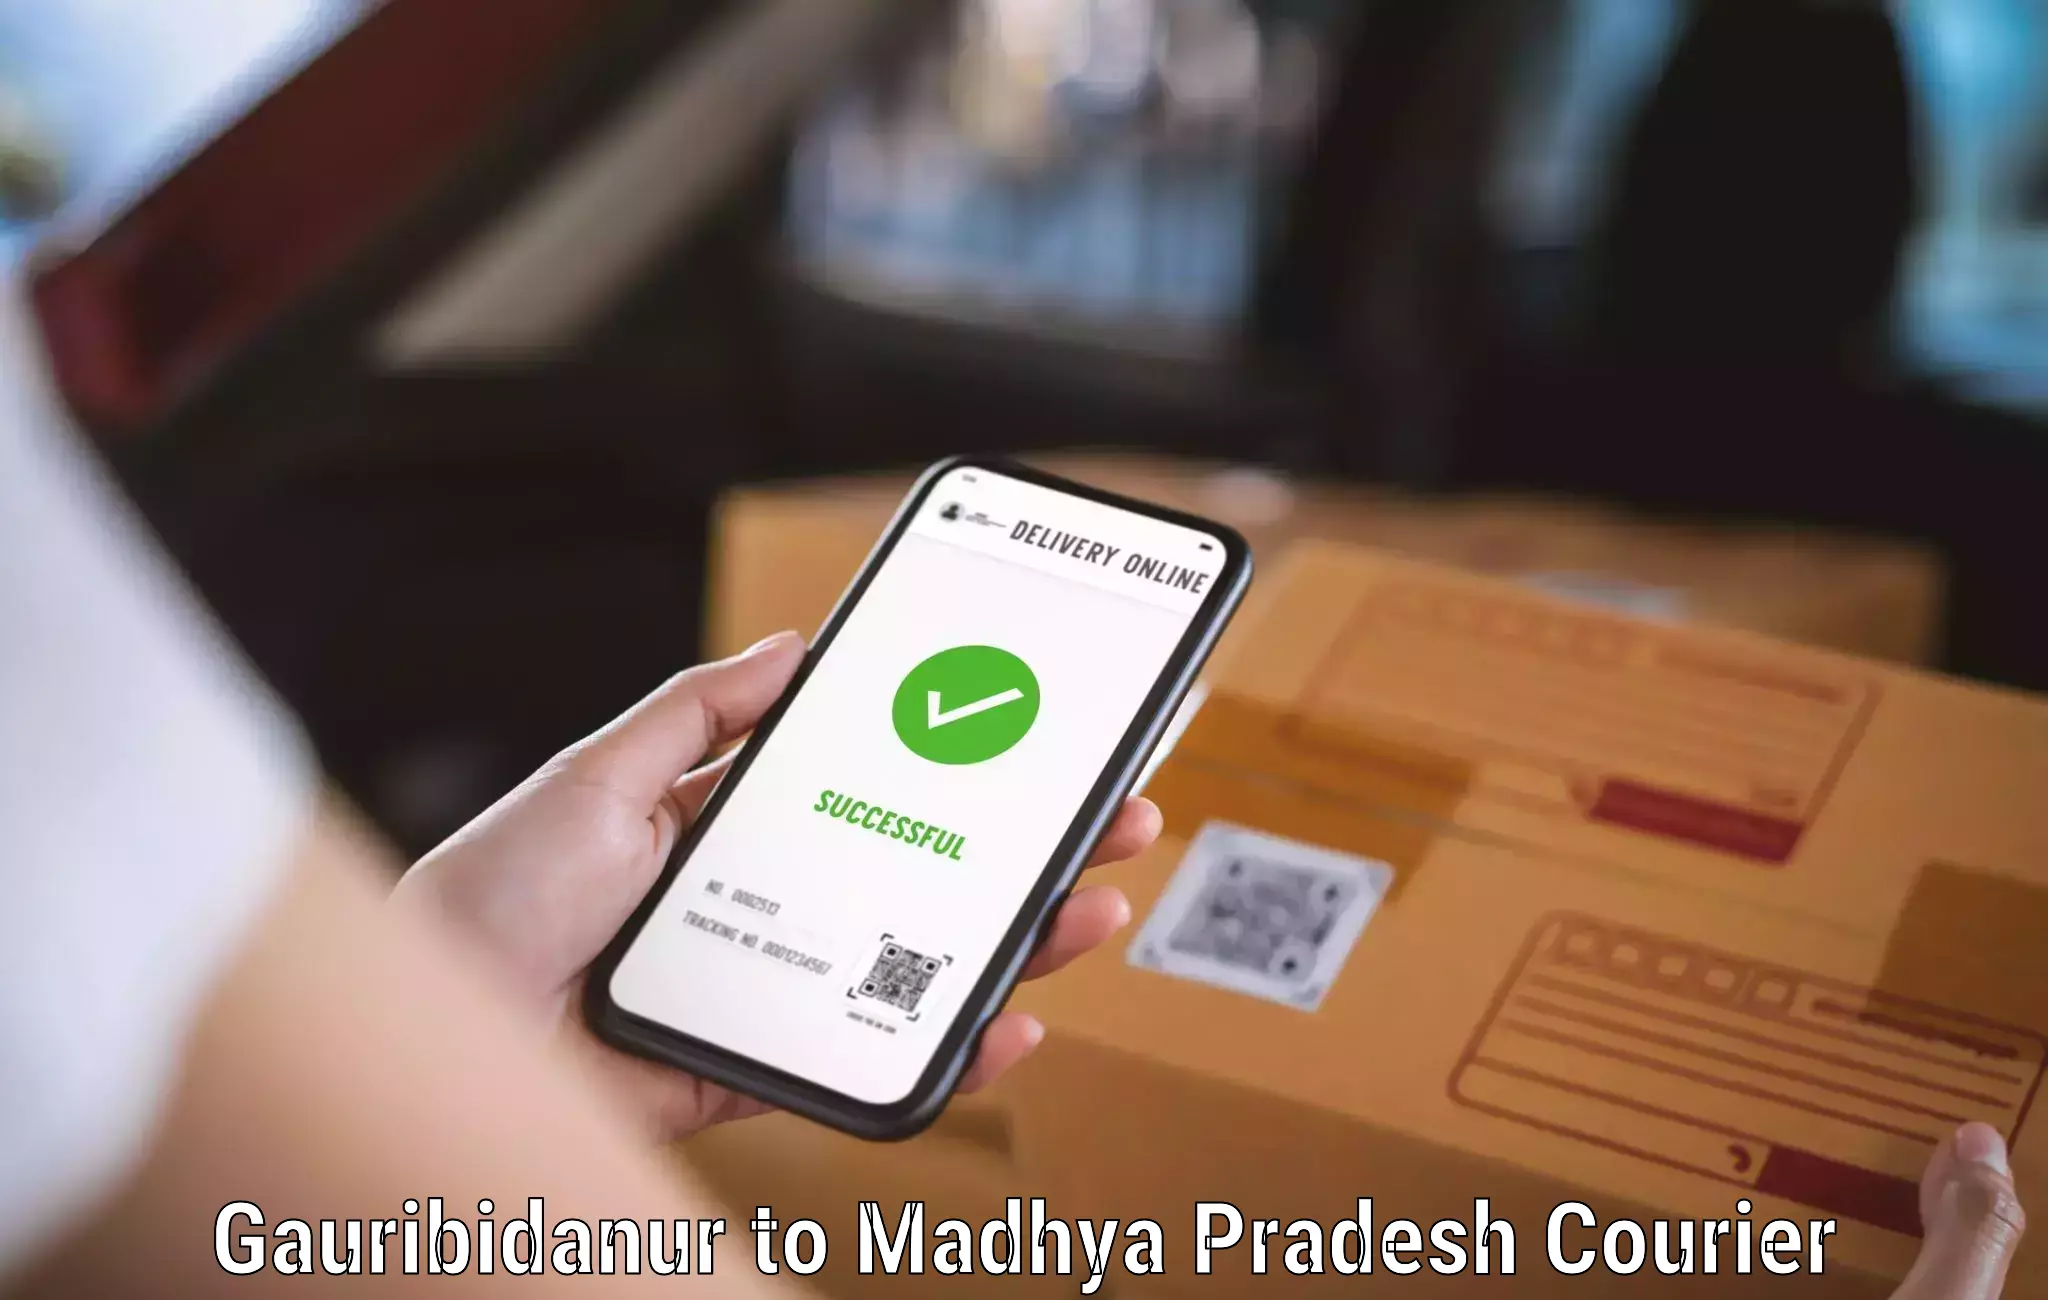 Digital courier platforms Gauribidanur to Depalpur